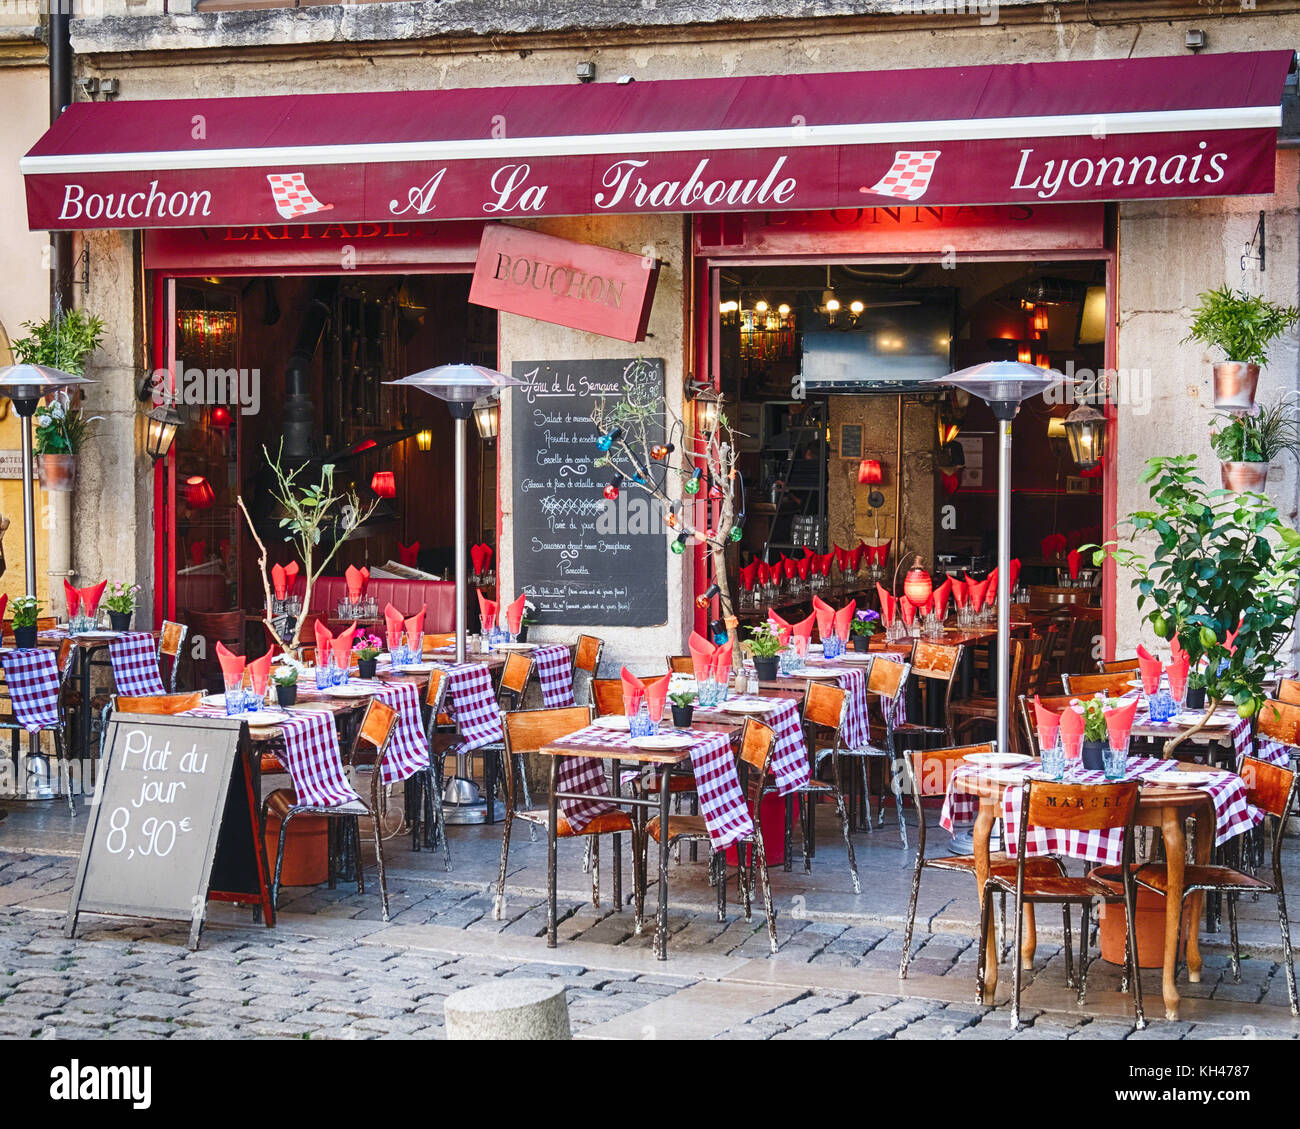 Bistro ouvert pour le déjeuner, Lyon, France Banque D'Images